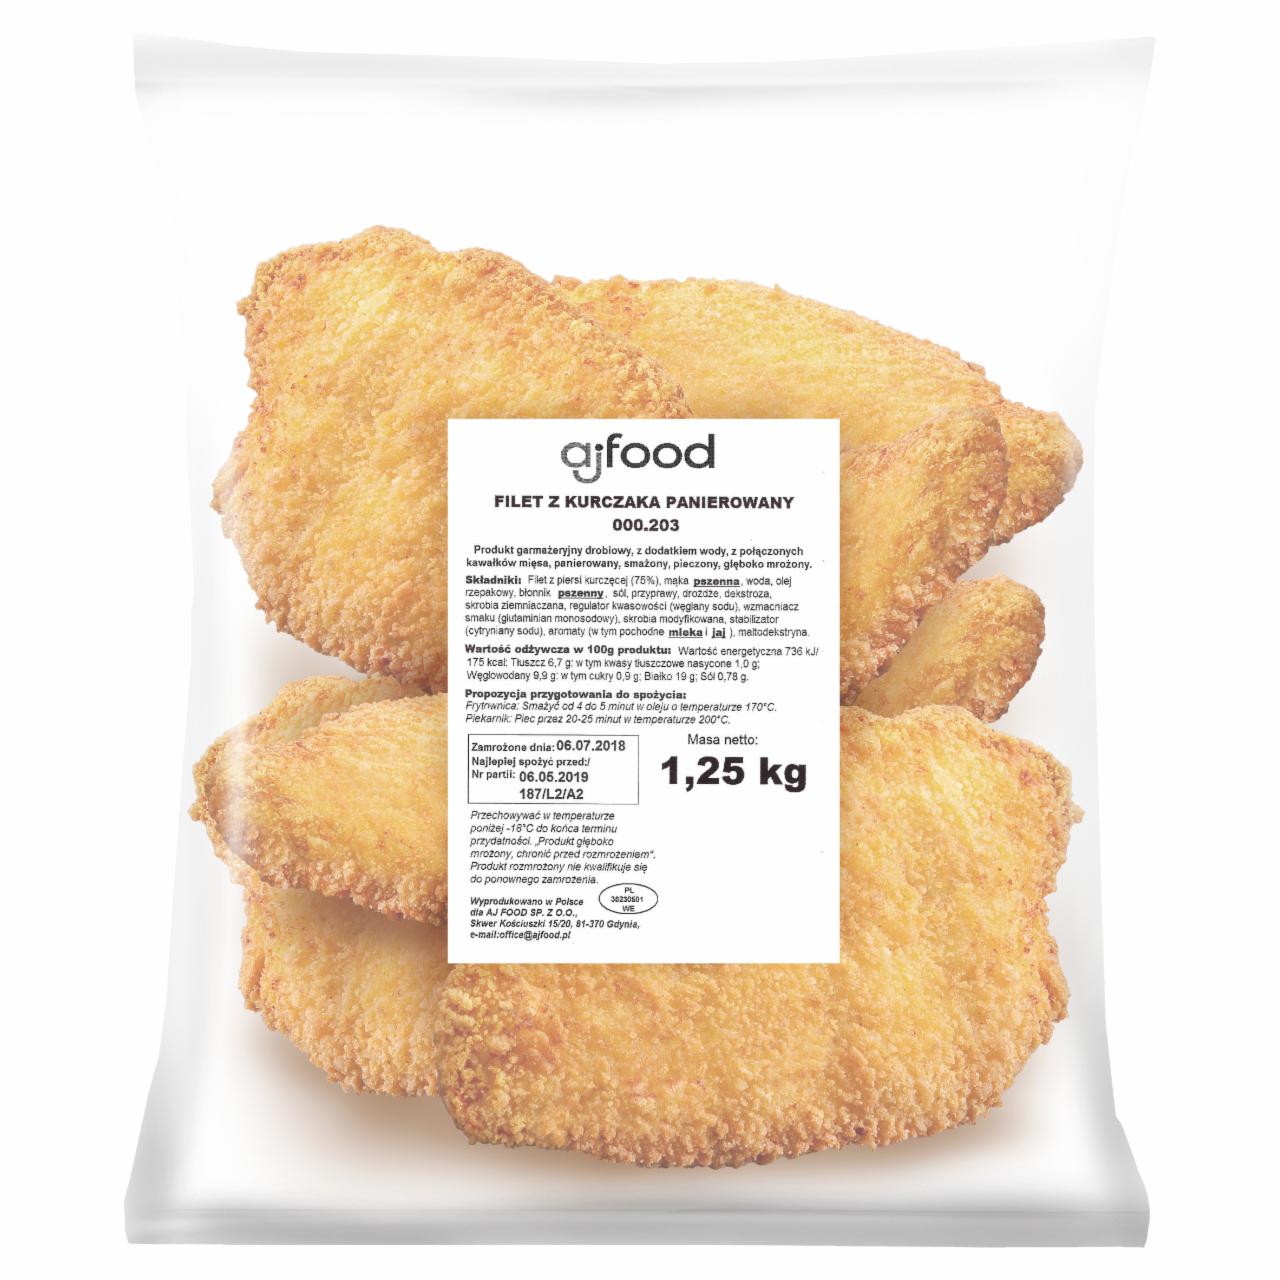 Zdjęcia - aj food Filet z kurczaka panierowany 1,25 kg